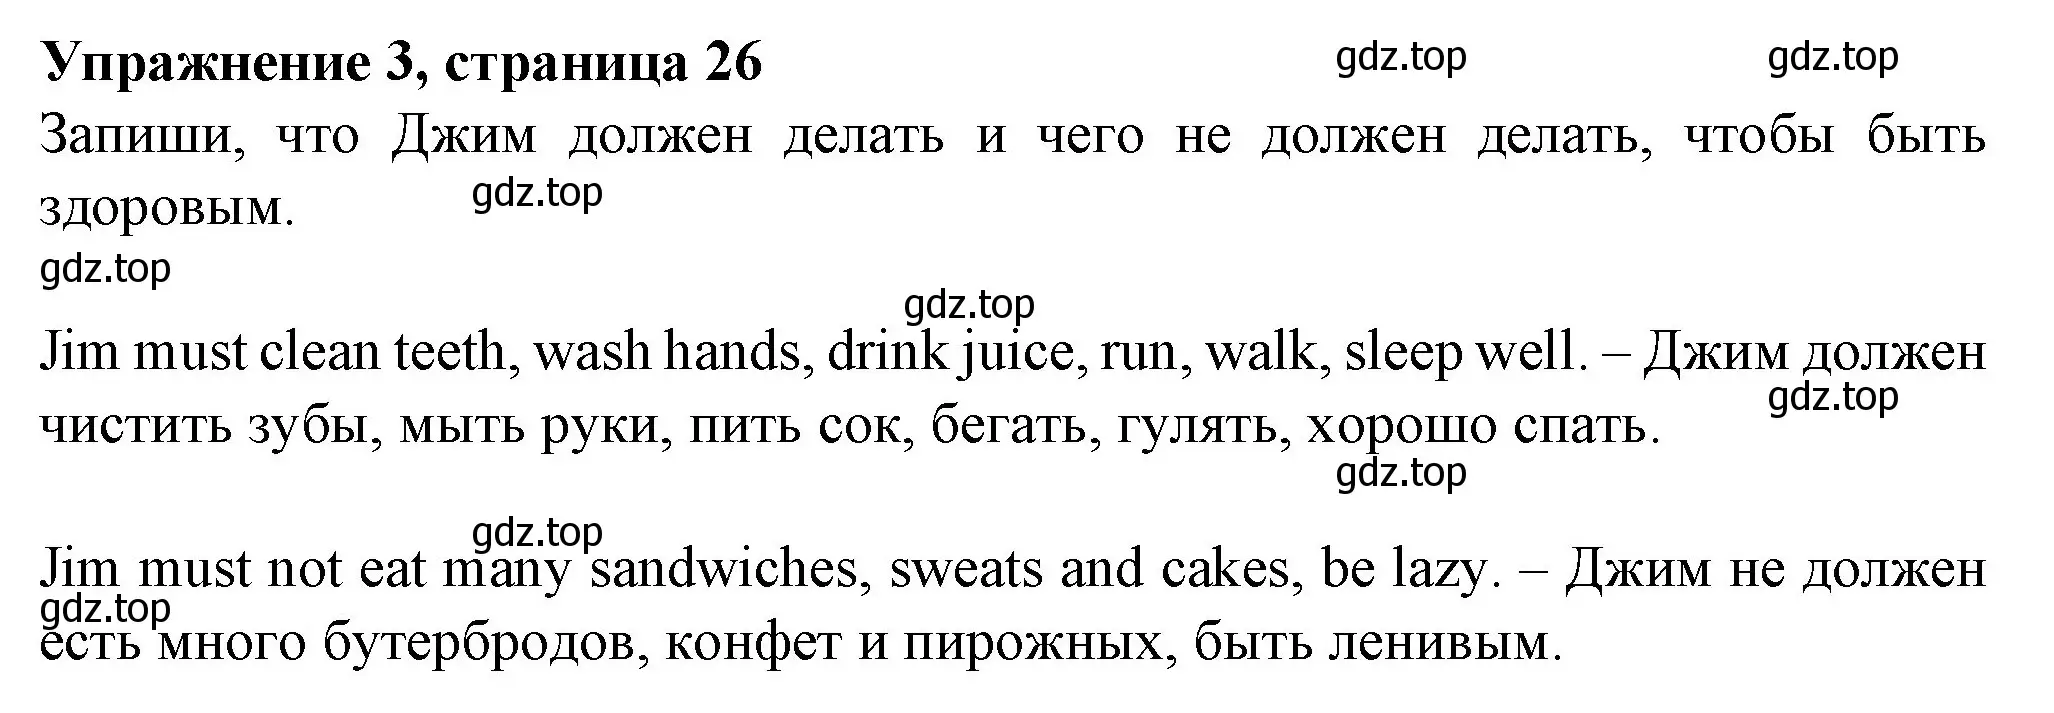 Решение номер 3 (страница 26) гдз по английскому языку 3 класс Биболетова, Денисенко, рабочая тетрадь